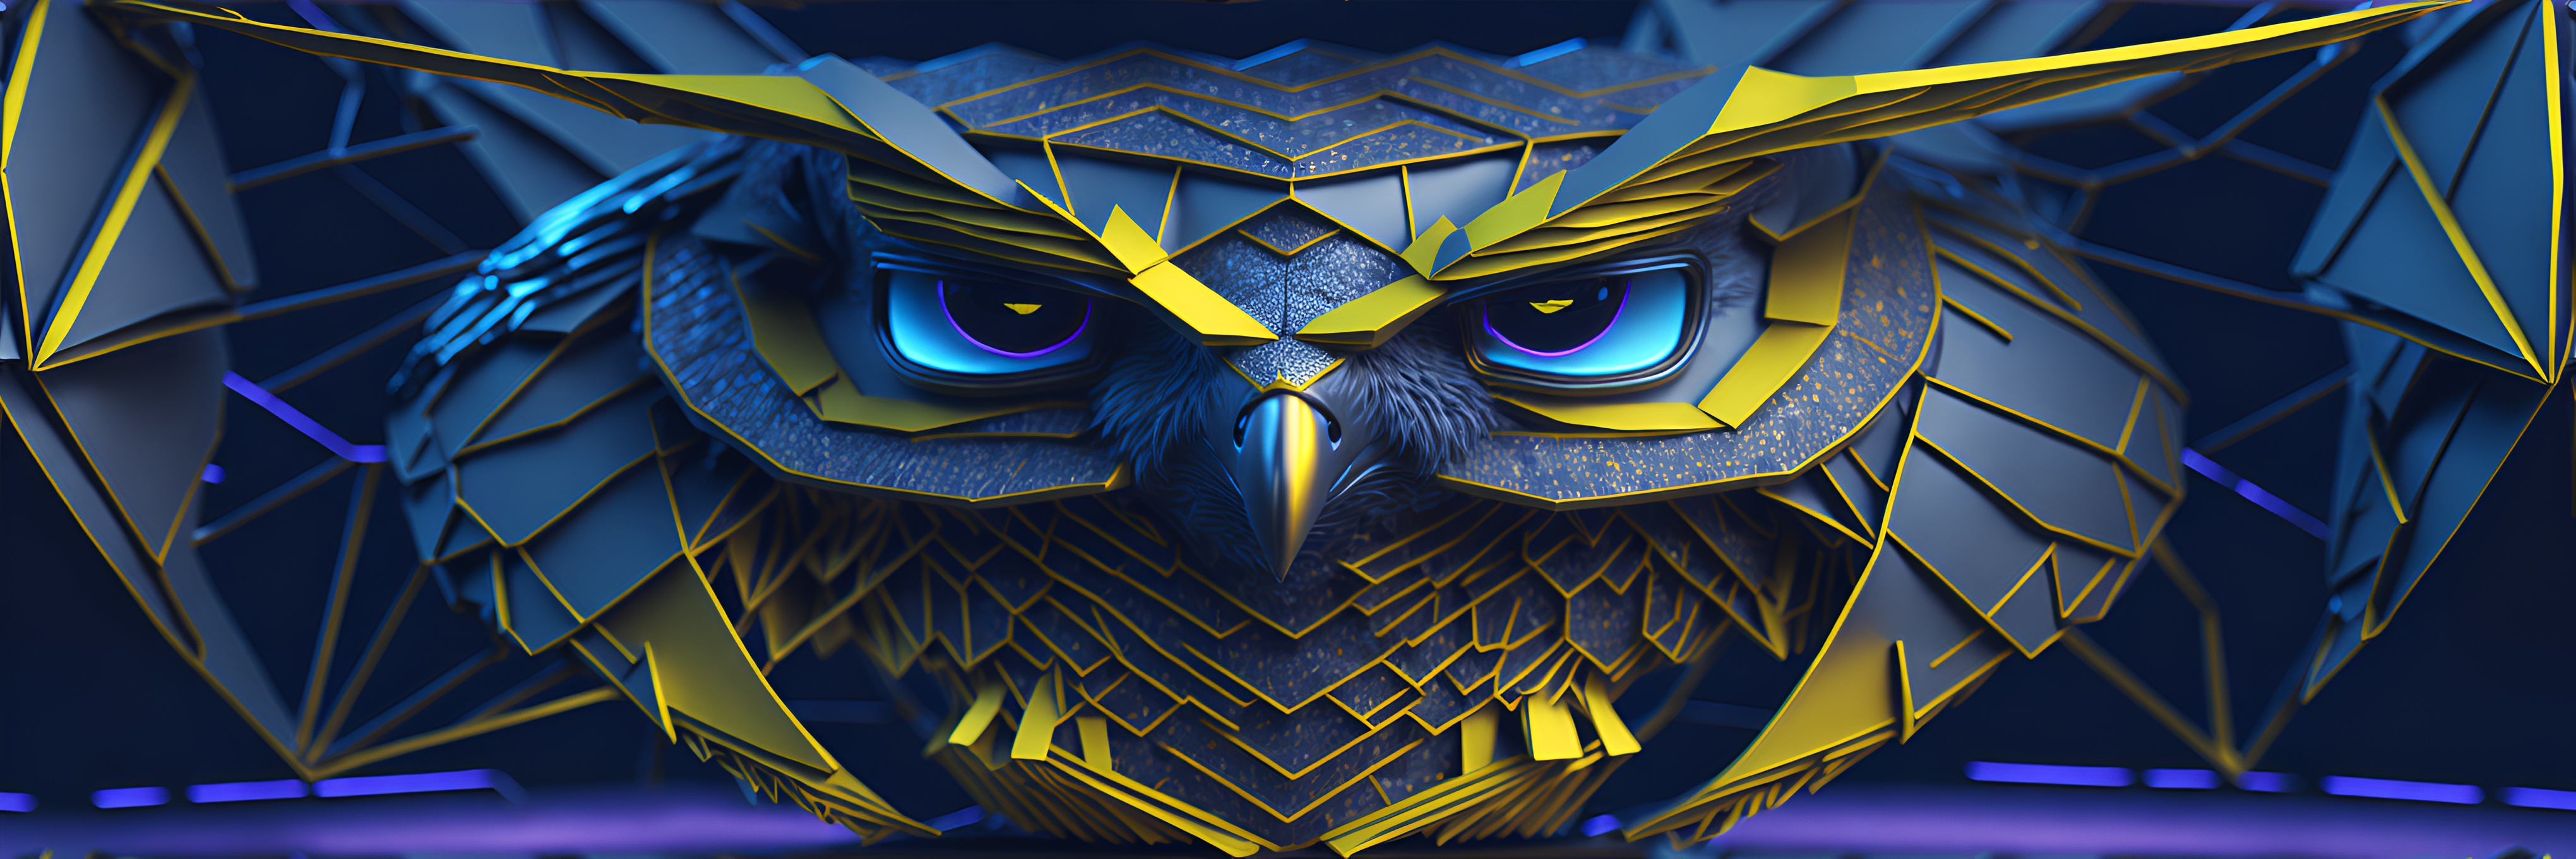 Owl-AI-Art バナー